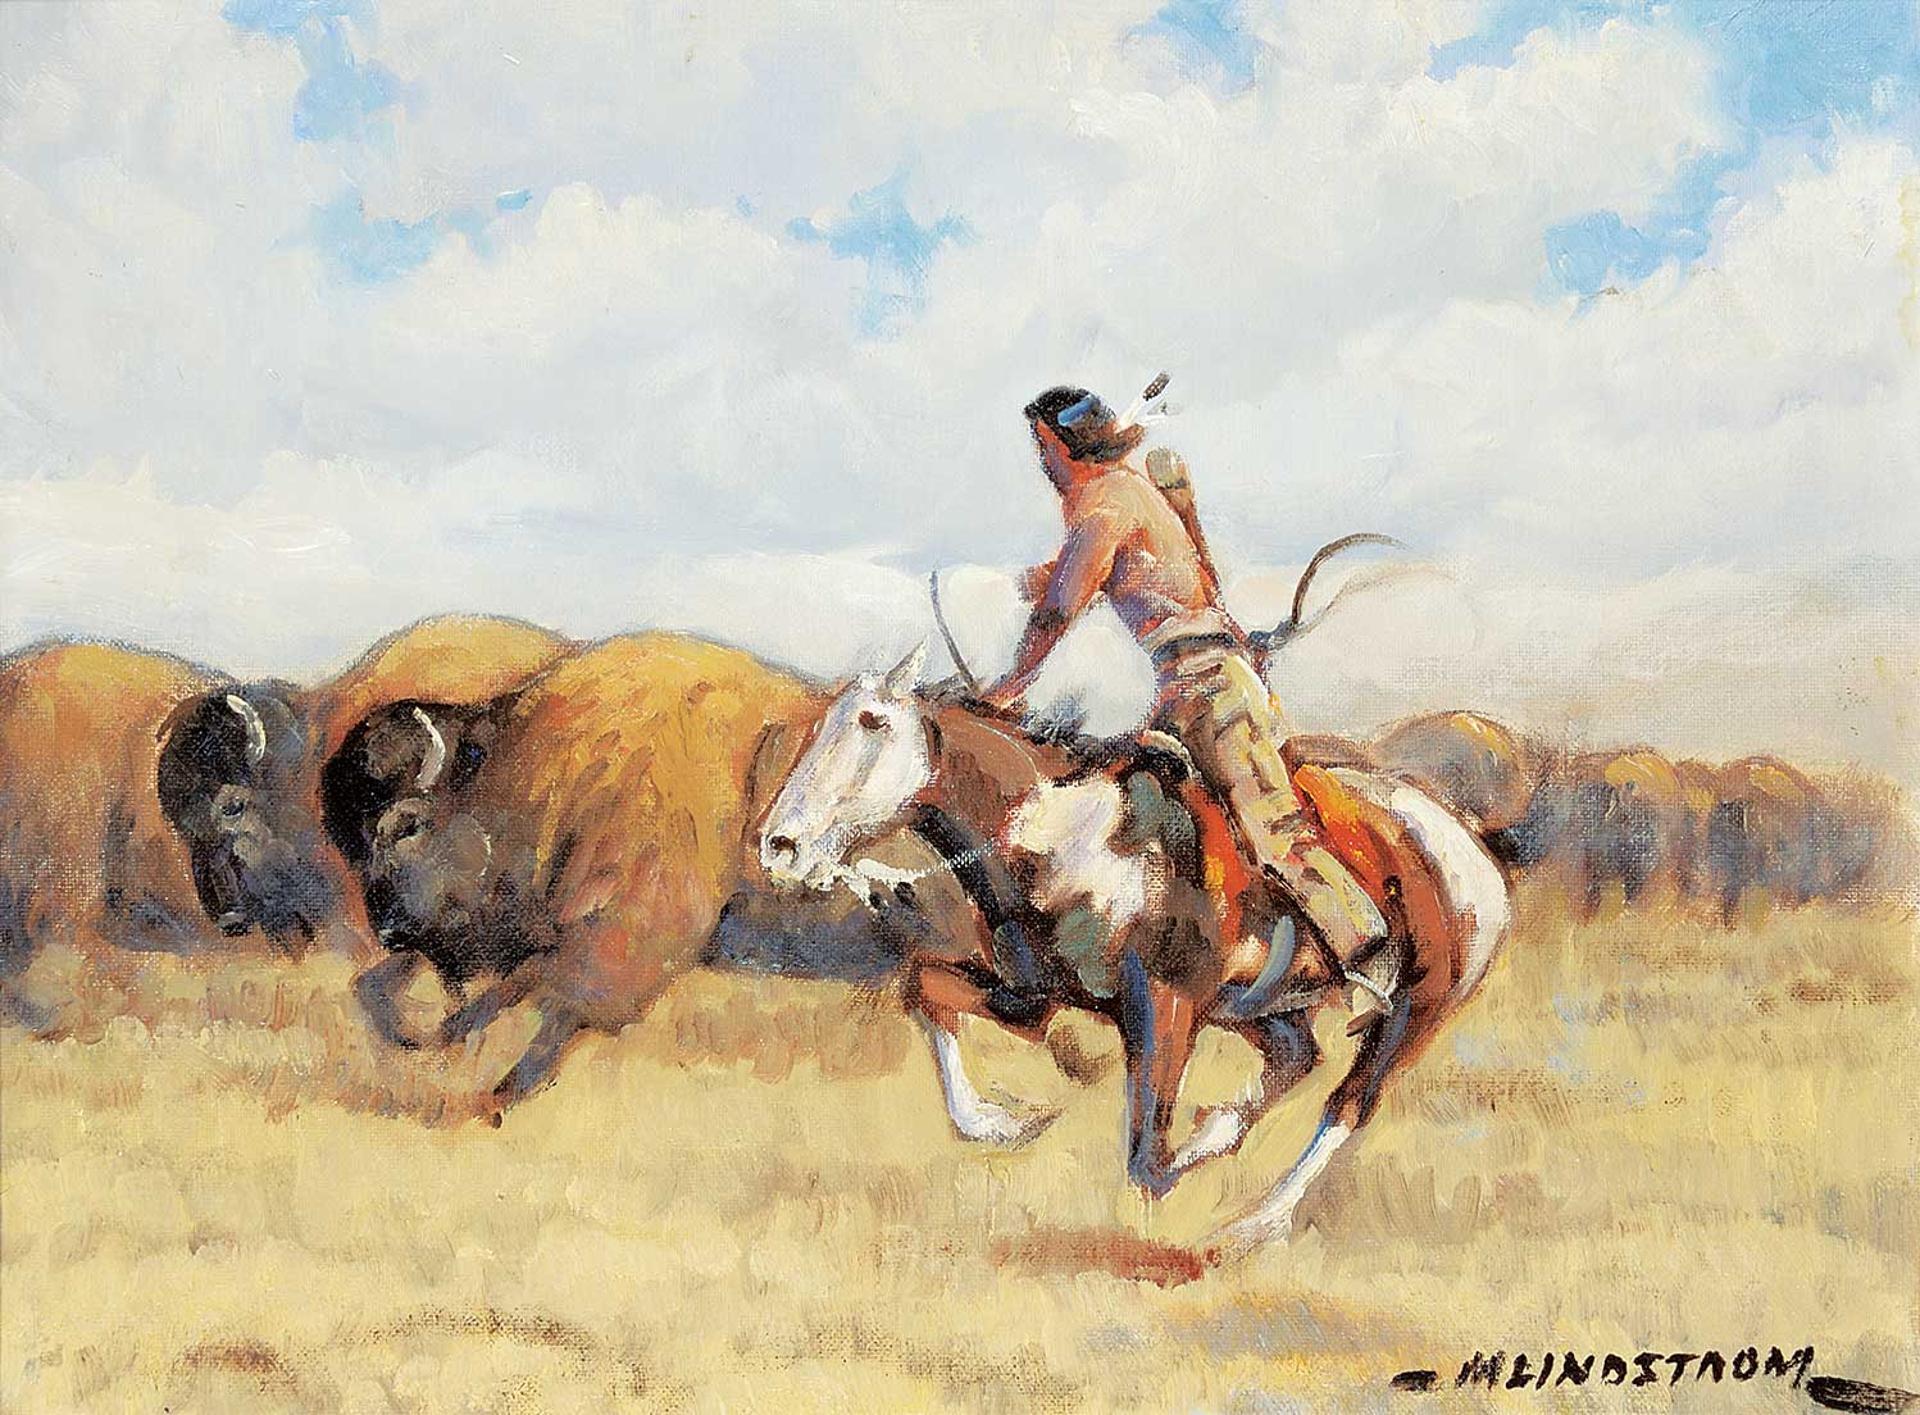 Matt Lindstrom (1890-1975) - Untitled - Bison Hunter